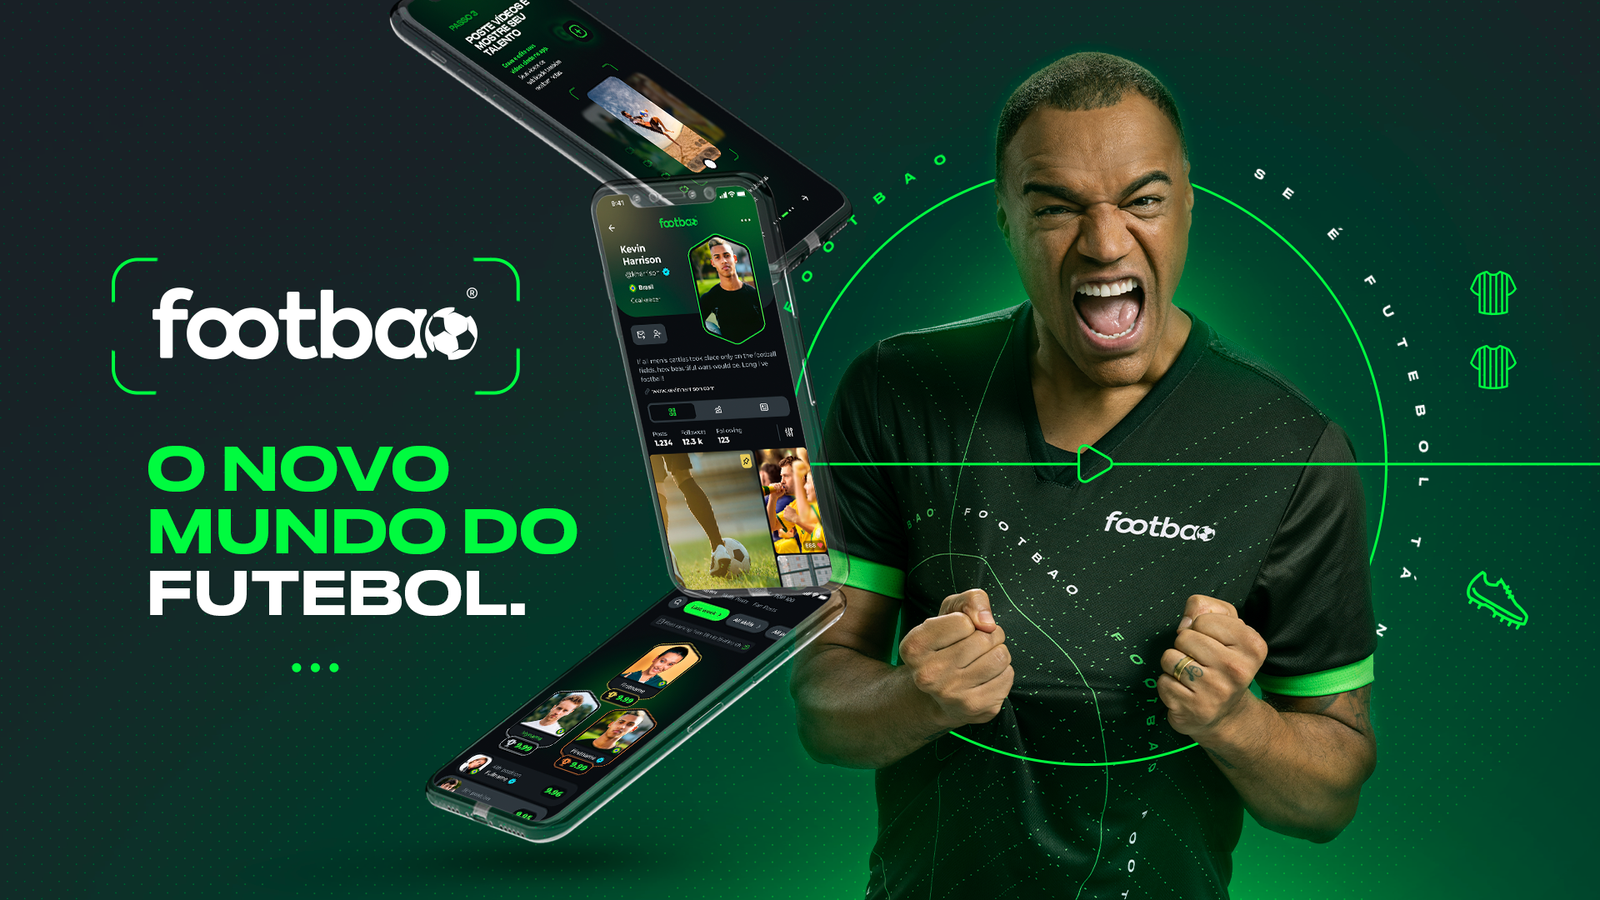 Novo app footbao chega ao Brasil com conteúdos 100% focados em futebol e Denilson como embaixador